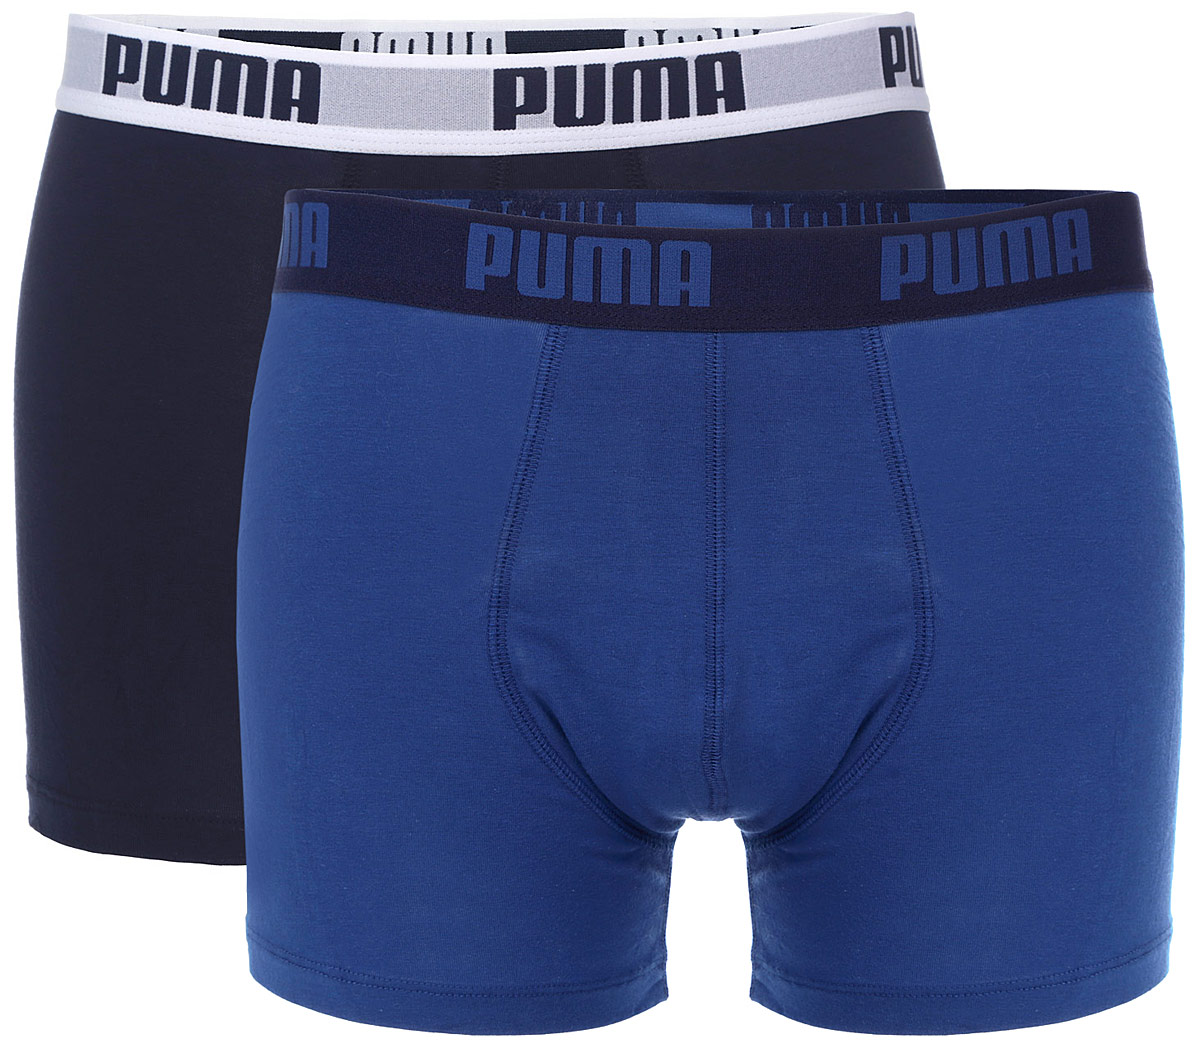 Трусы-боксеры мужские Puma Basic Boxer 2P, цвет: синий, темно-синий. 88886960. Размер XXL (52/54)